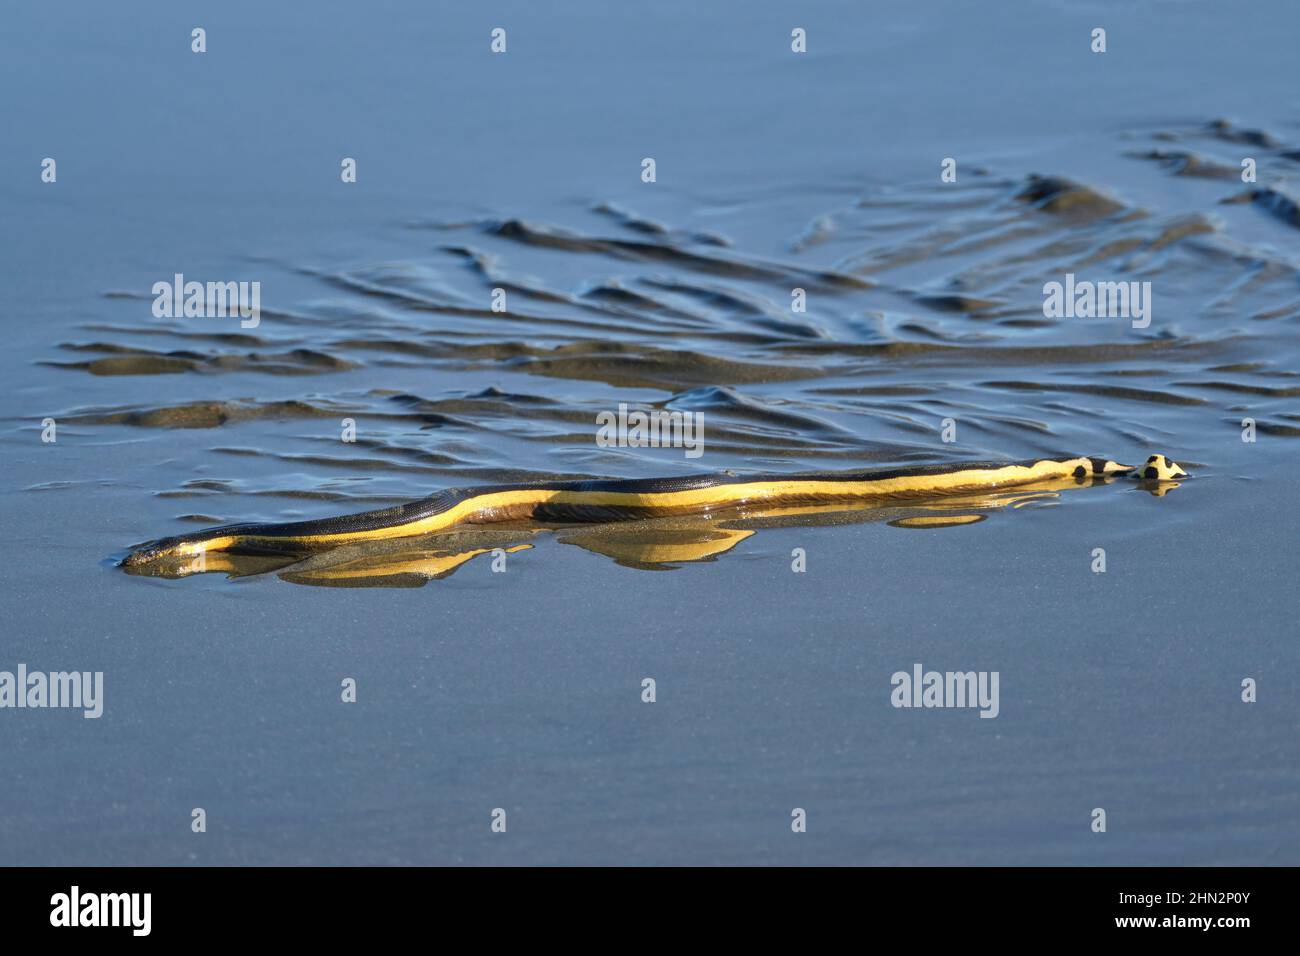 Un serpente di mare dalle venature gialle lavato sulla spiaggia lascia tracce nella sabbia bagnata mentre cerca di scivolare indietro verso l'oceano. Foto Stock